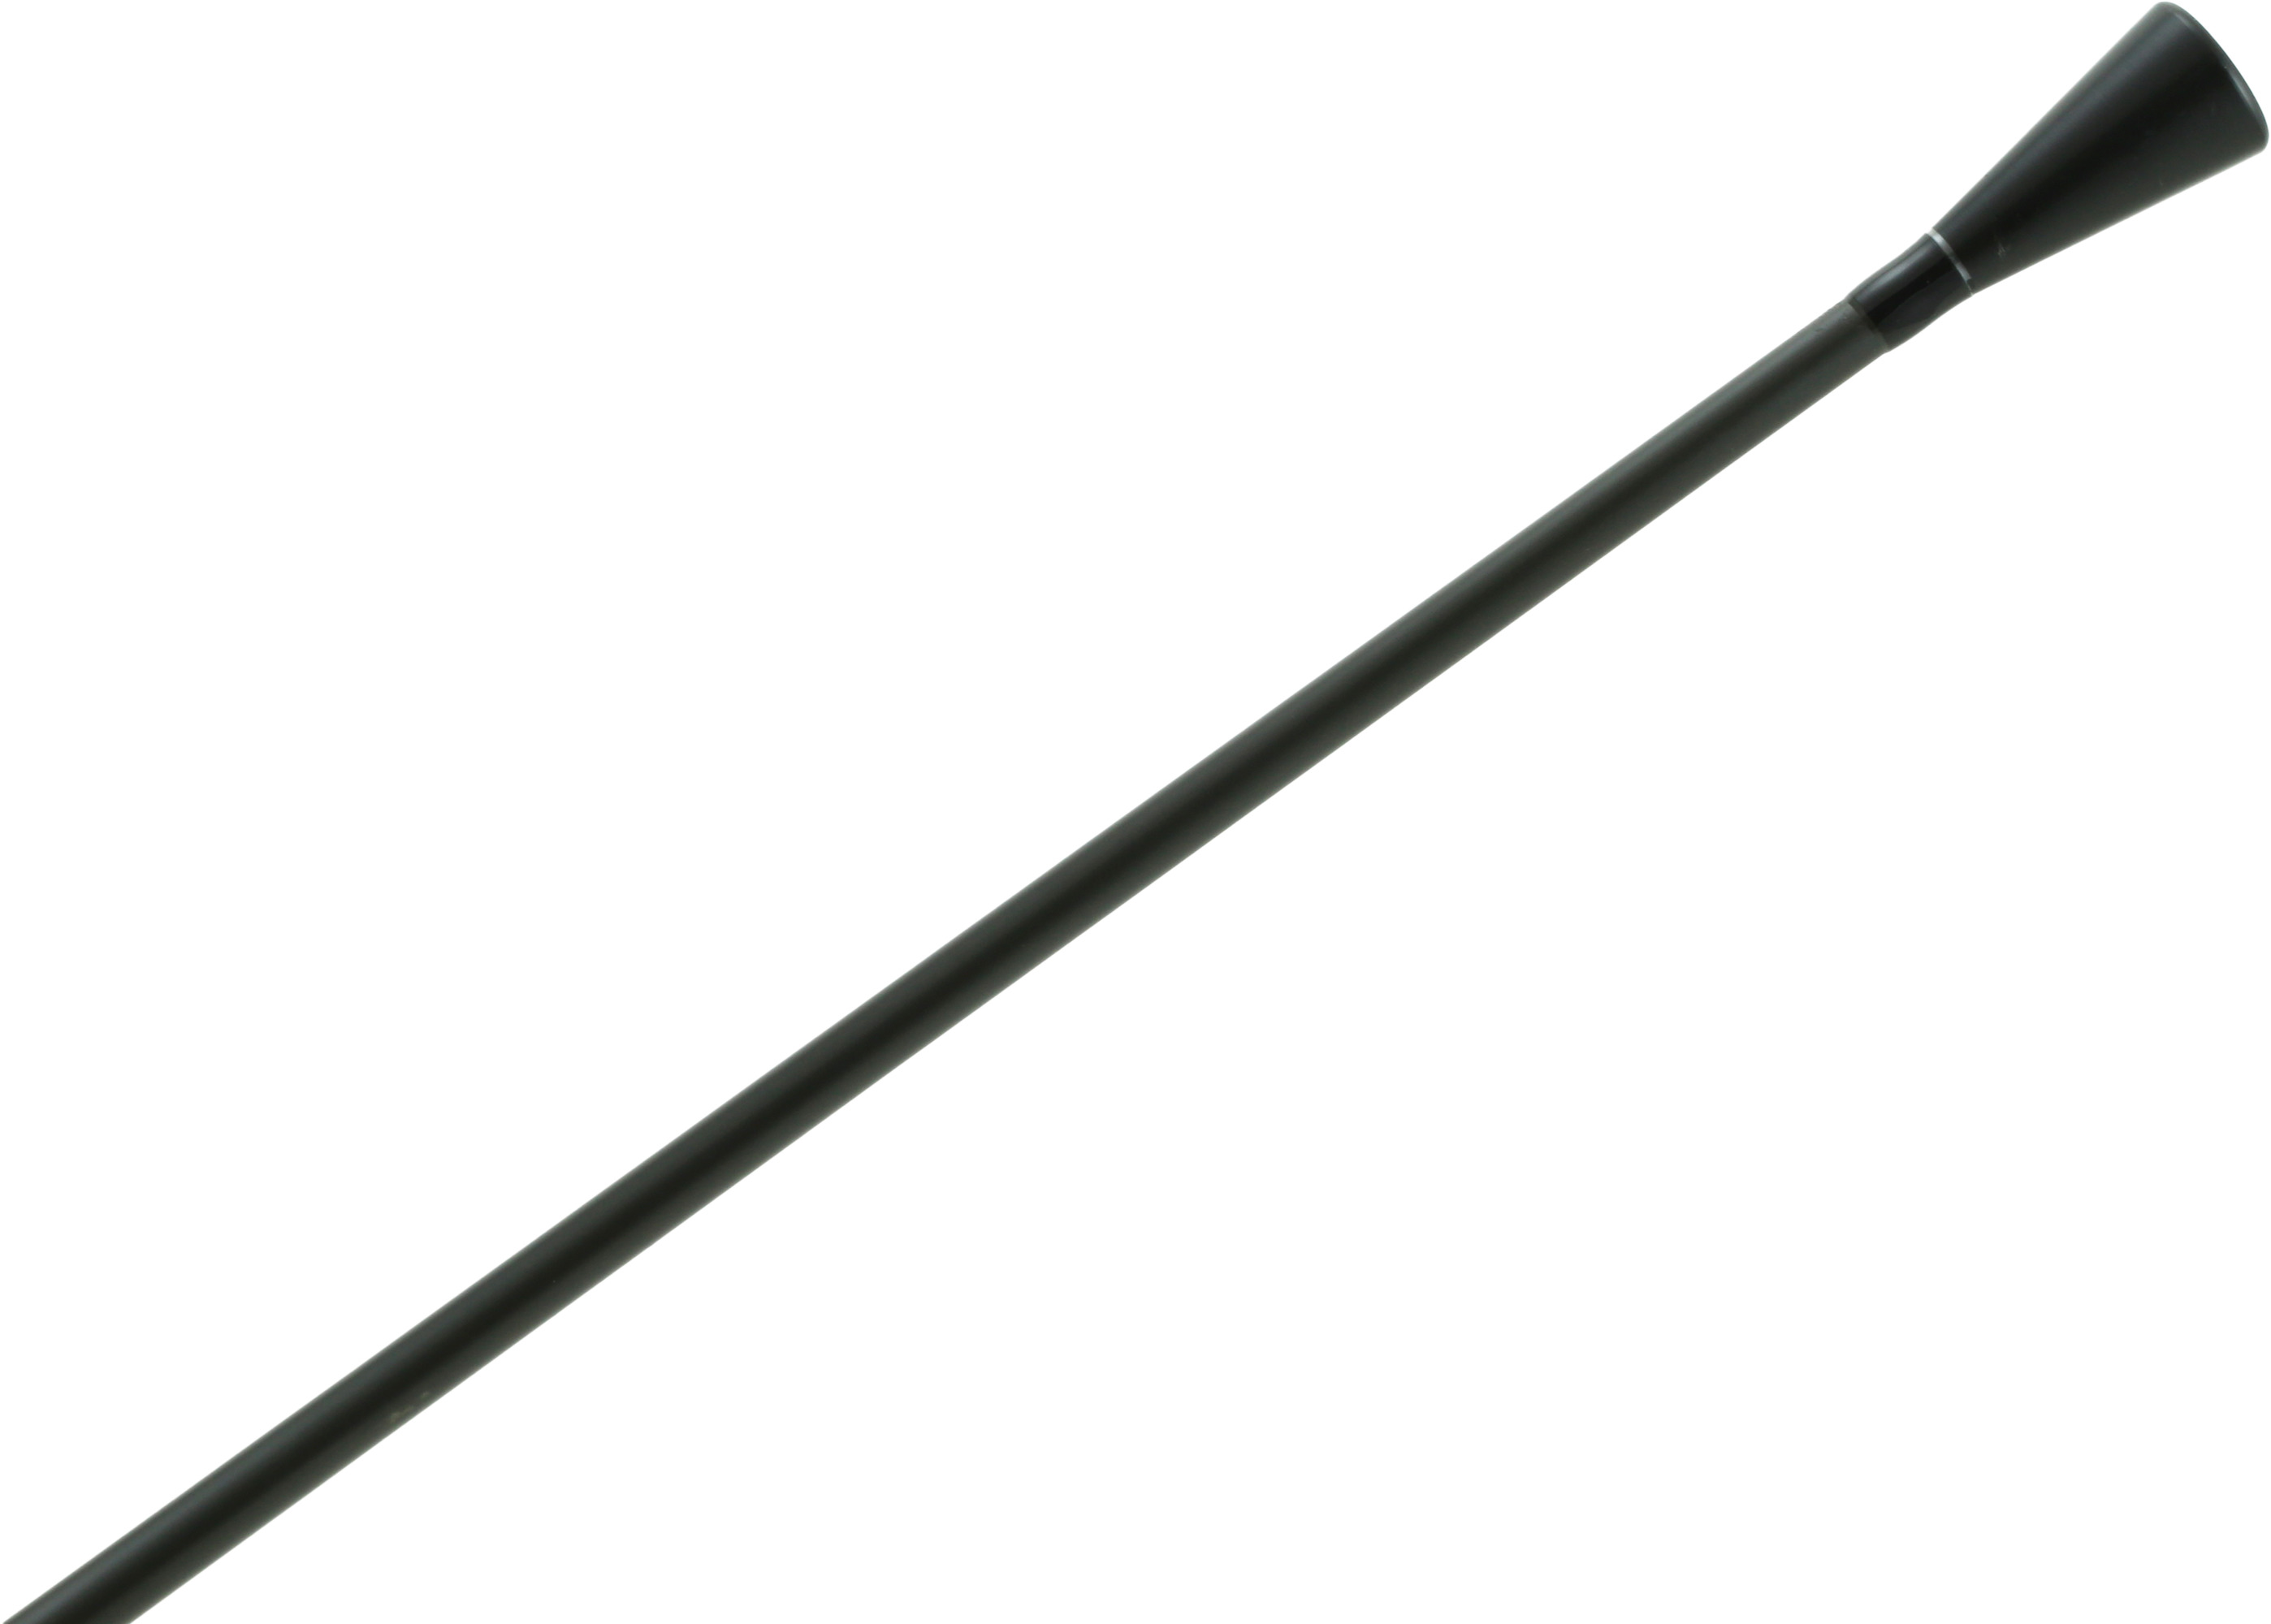 Okuma Cortez Saltwater Casting Rod, Medium, 2 Piece, 15-30 lbs CZ